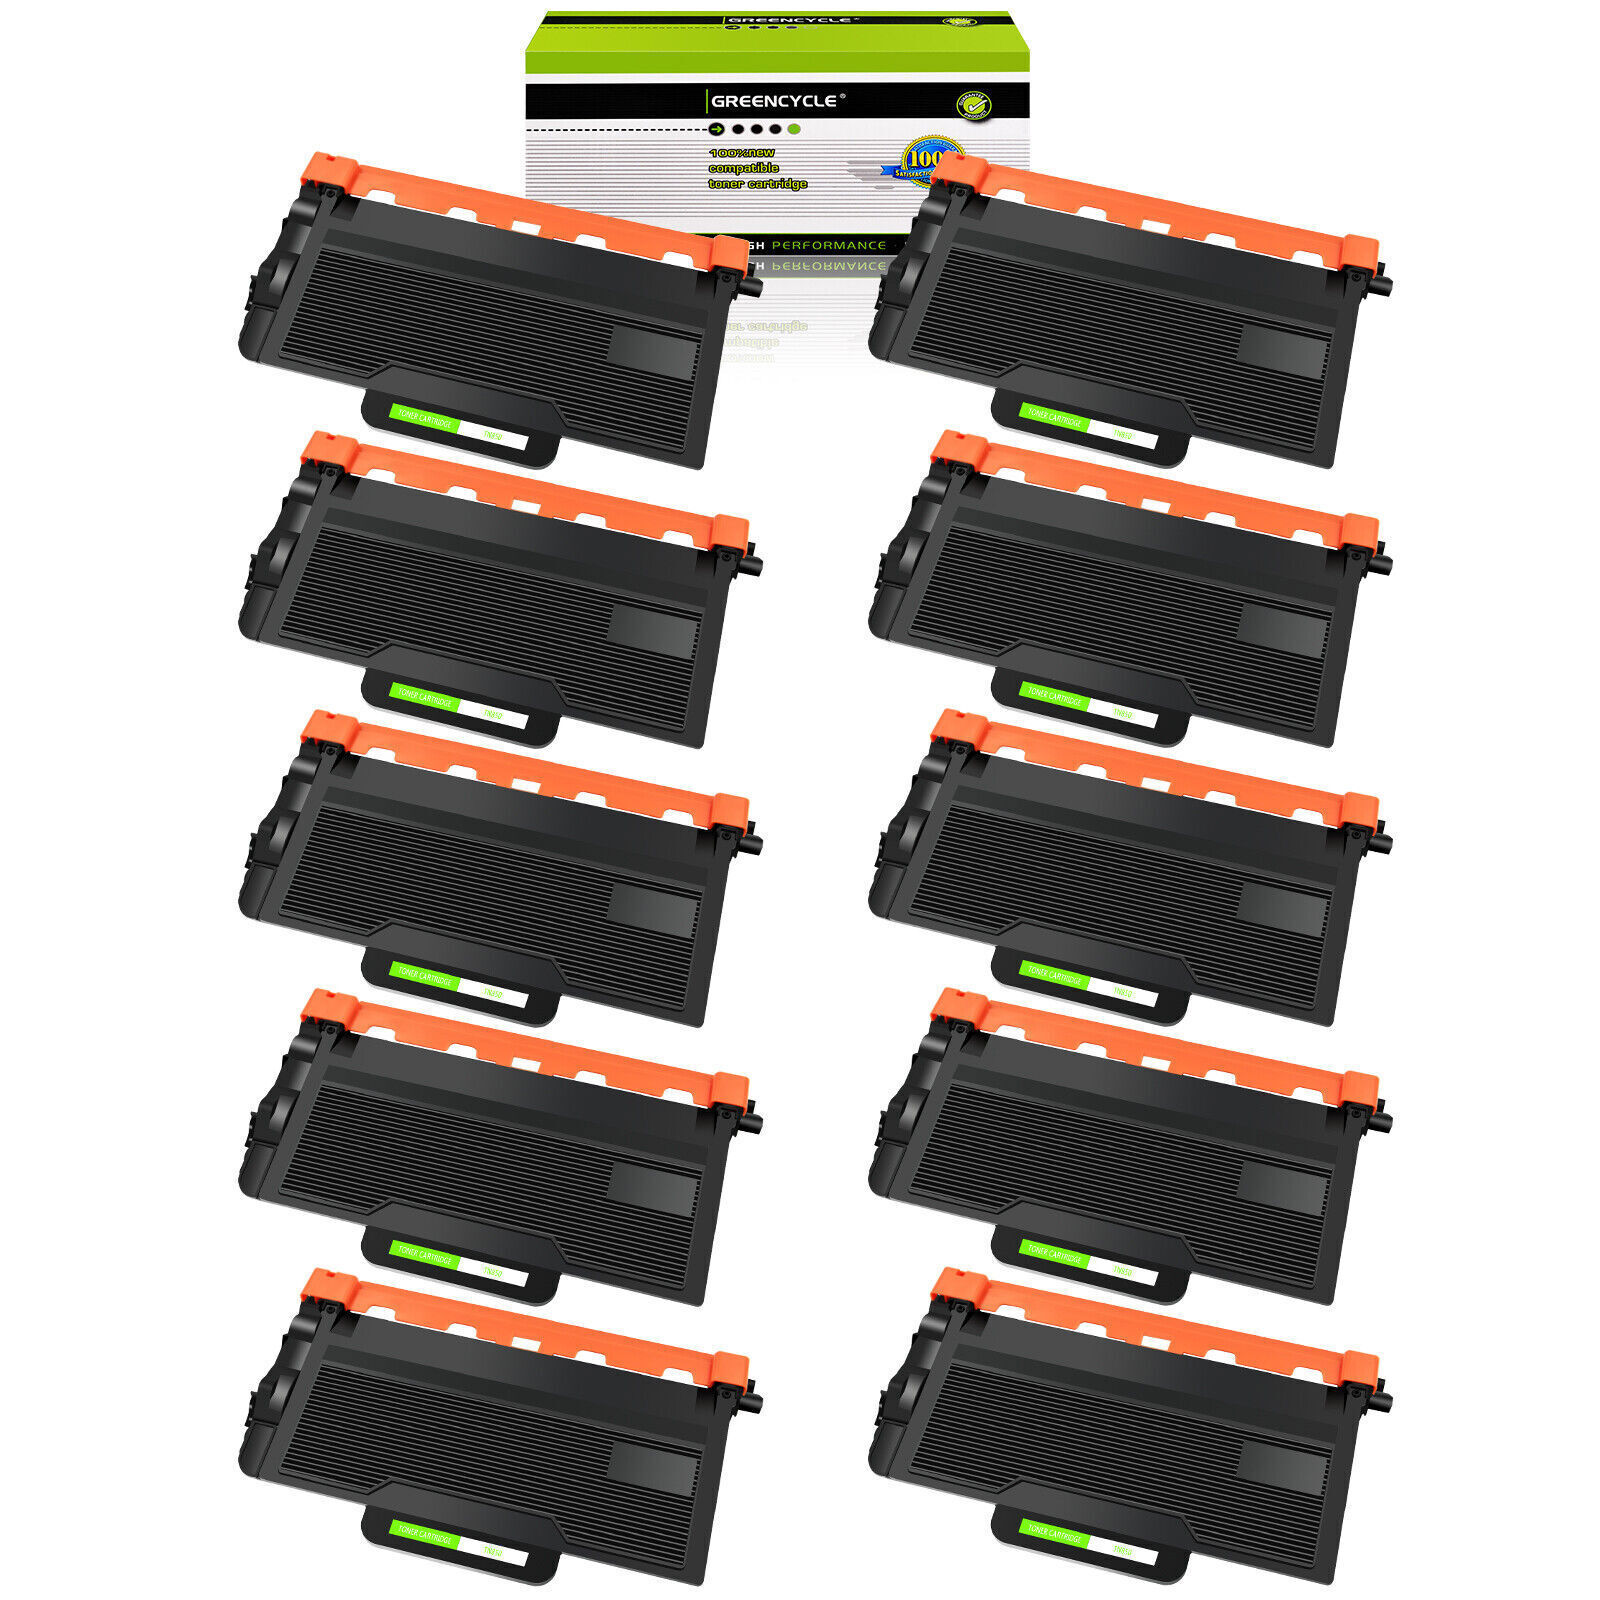 10PK TN850 Toner Cartridge Fits For Brother DCP-L5500DN MFC-L6700DW MFC-L6750DW